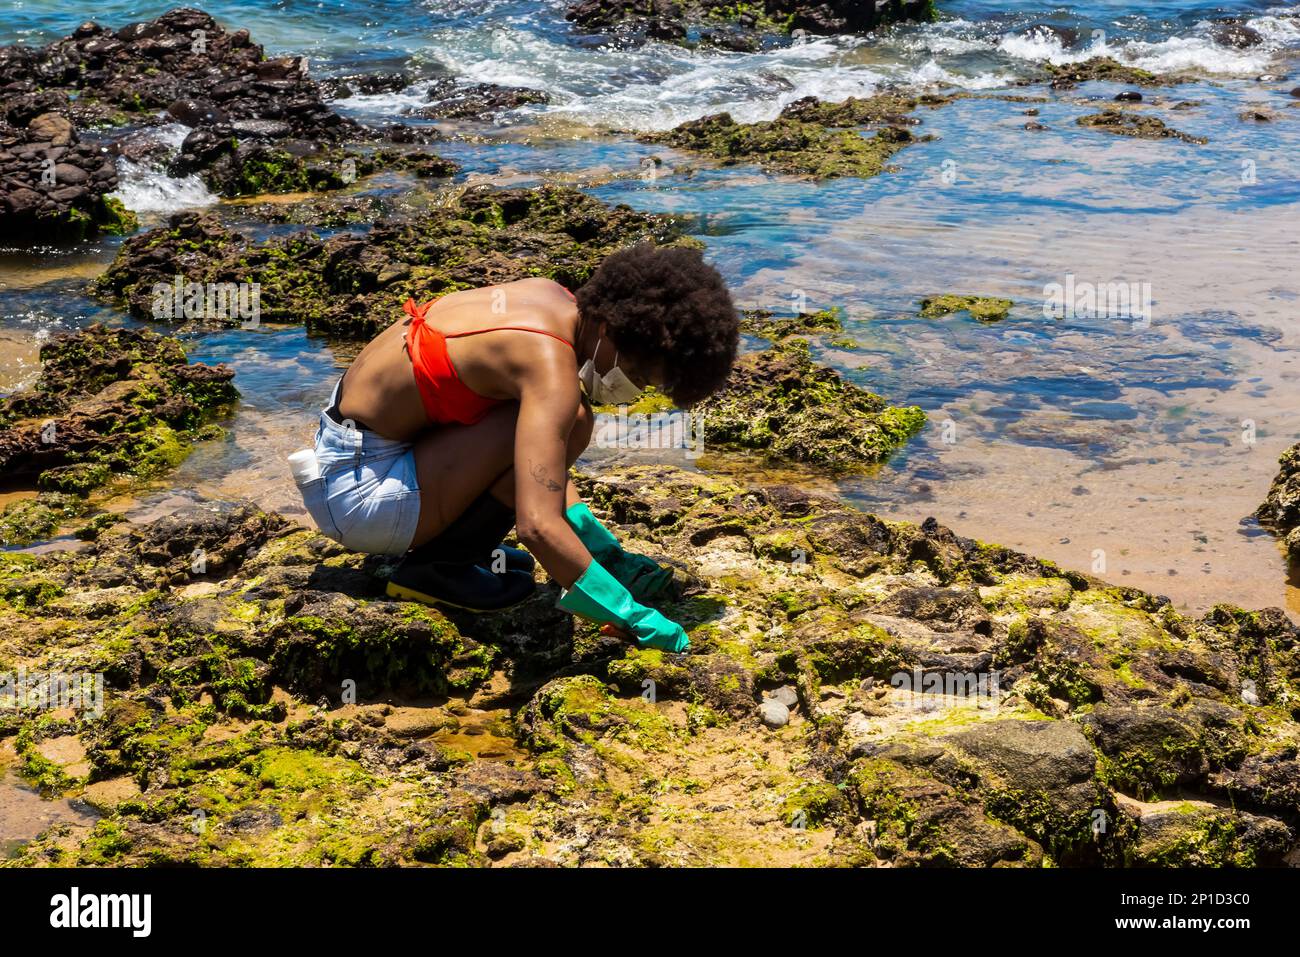 Salvador, Bahia, Brasilien - 27. Oktober 2019: Ein Freiwilliger wird gesehen, wie er den Strand von Rio Vermelho aufräumt, nachdem er von einem Schiff vor der brasilianischen Küste Öl verschüttet hatte. S Stockfoto